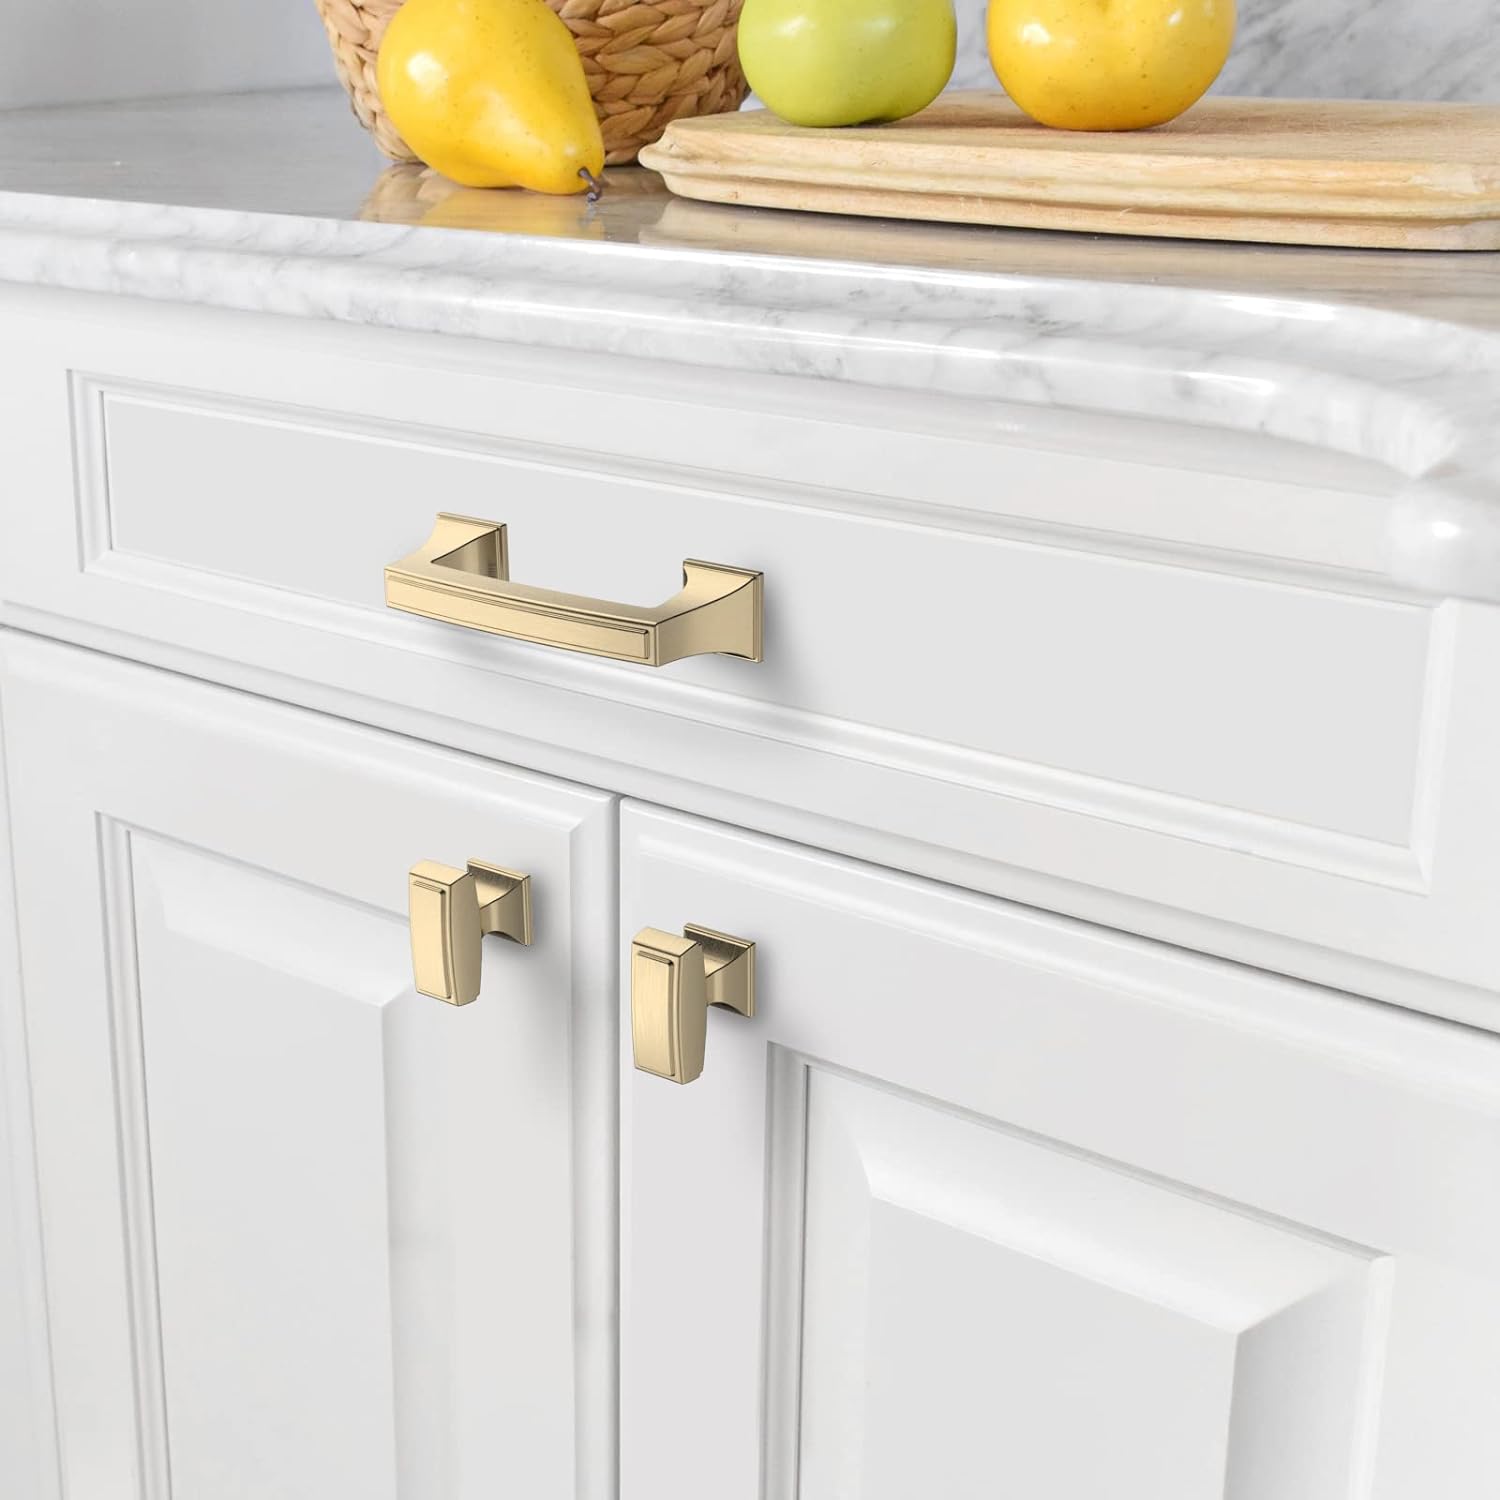 Brushed Brass Cabinet Pulls 3 Inch(76mm) Hole Center Cabinet Hardware Kitchen Cabinet Handles for Bathroom Gold Drawer Pulls Dresser Pulls